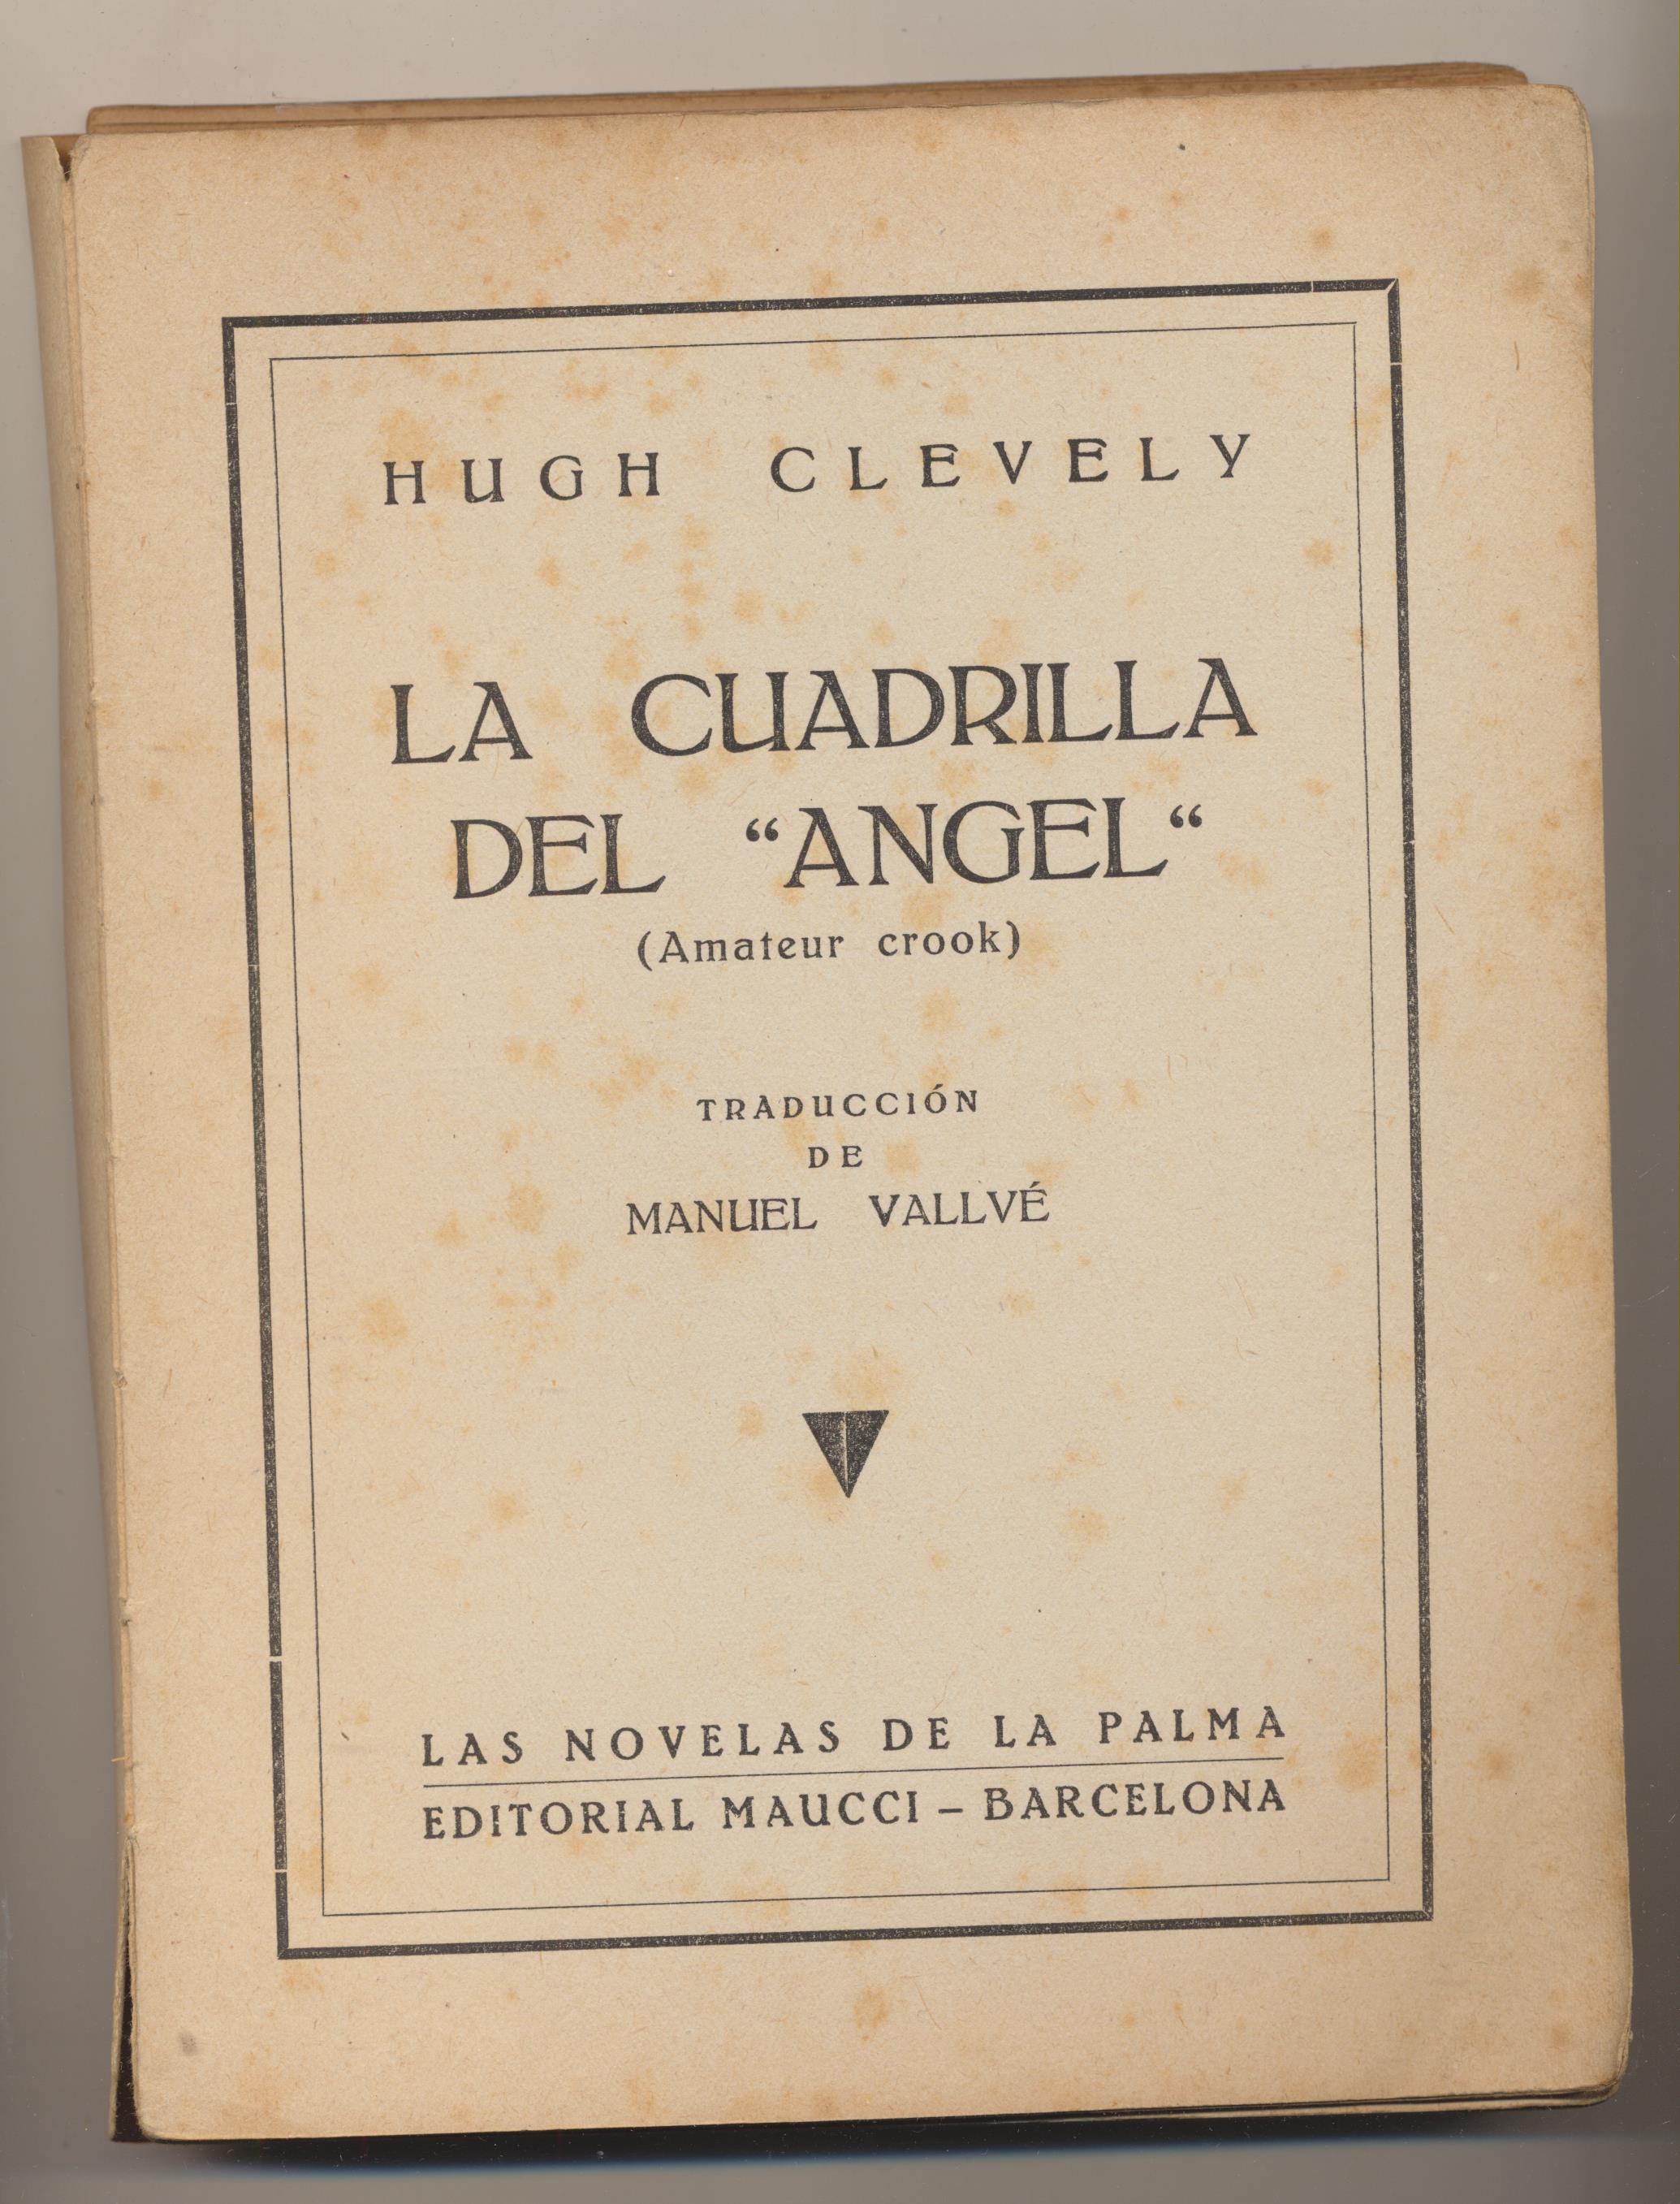 Hugh Clevely. La Cuadrilla del Ángel. Las Novelas de La Palma. Editorial Maucci